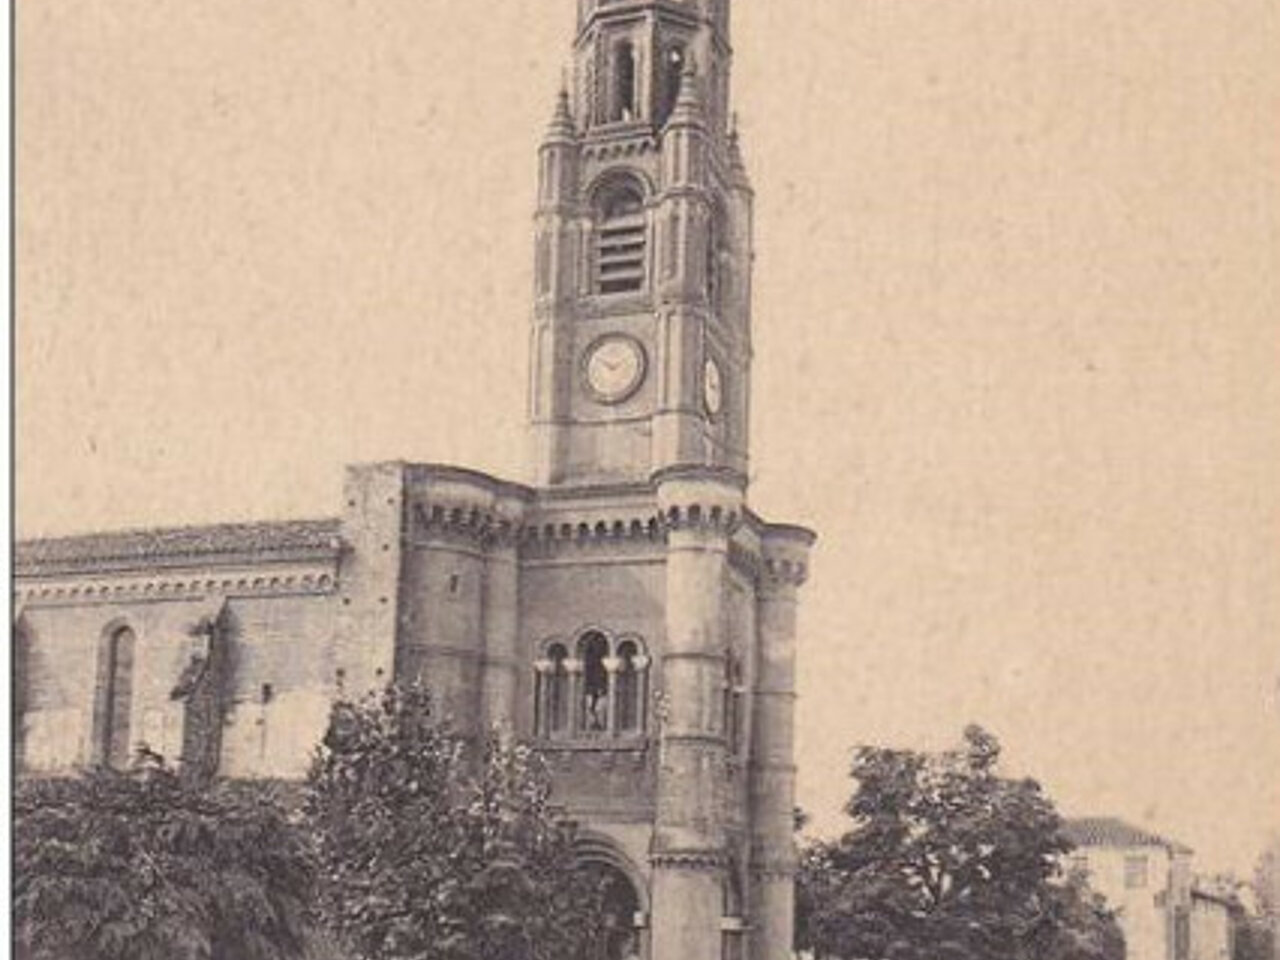 vue en hauteur et en noir et blanc de l'église de Meauzac